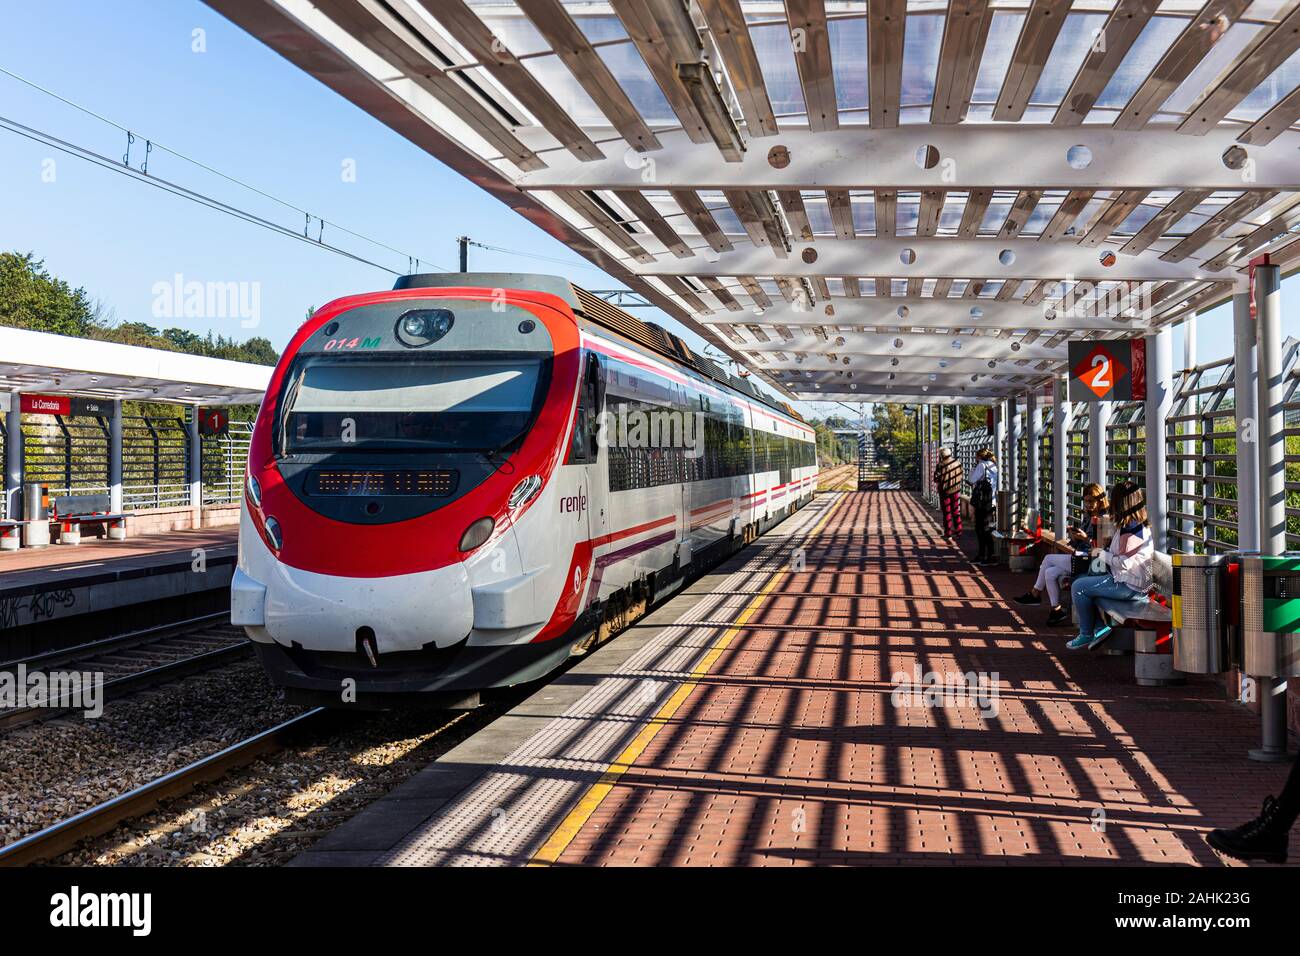 Eine moderne S-Bahn am Bahnhof ankommen in Urb. Pintado, Oviedo, Spanien - Stockfoto